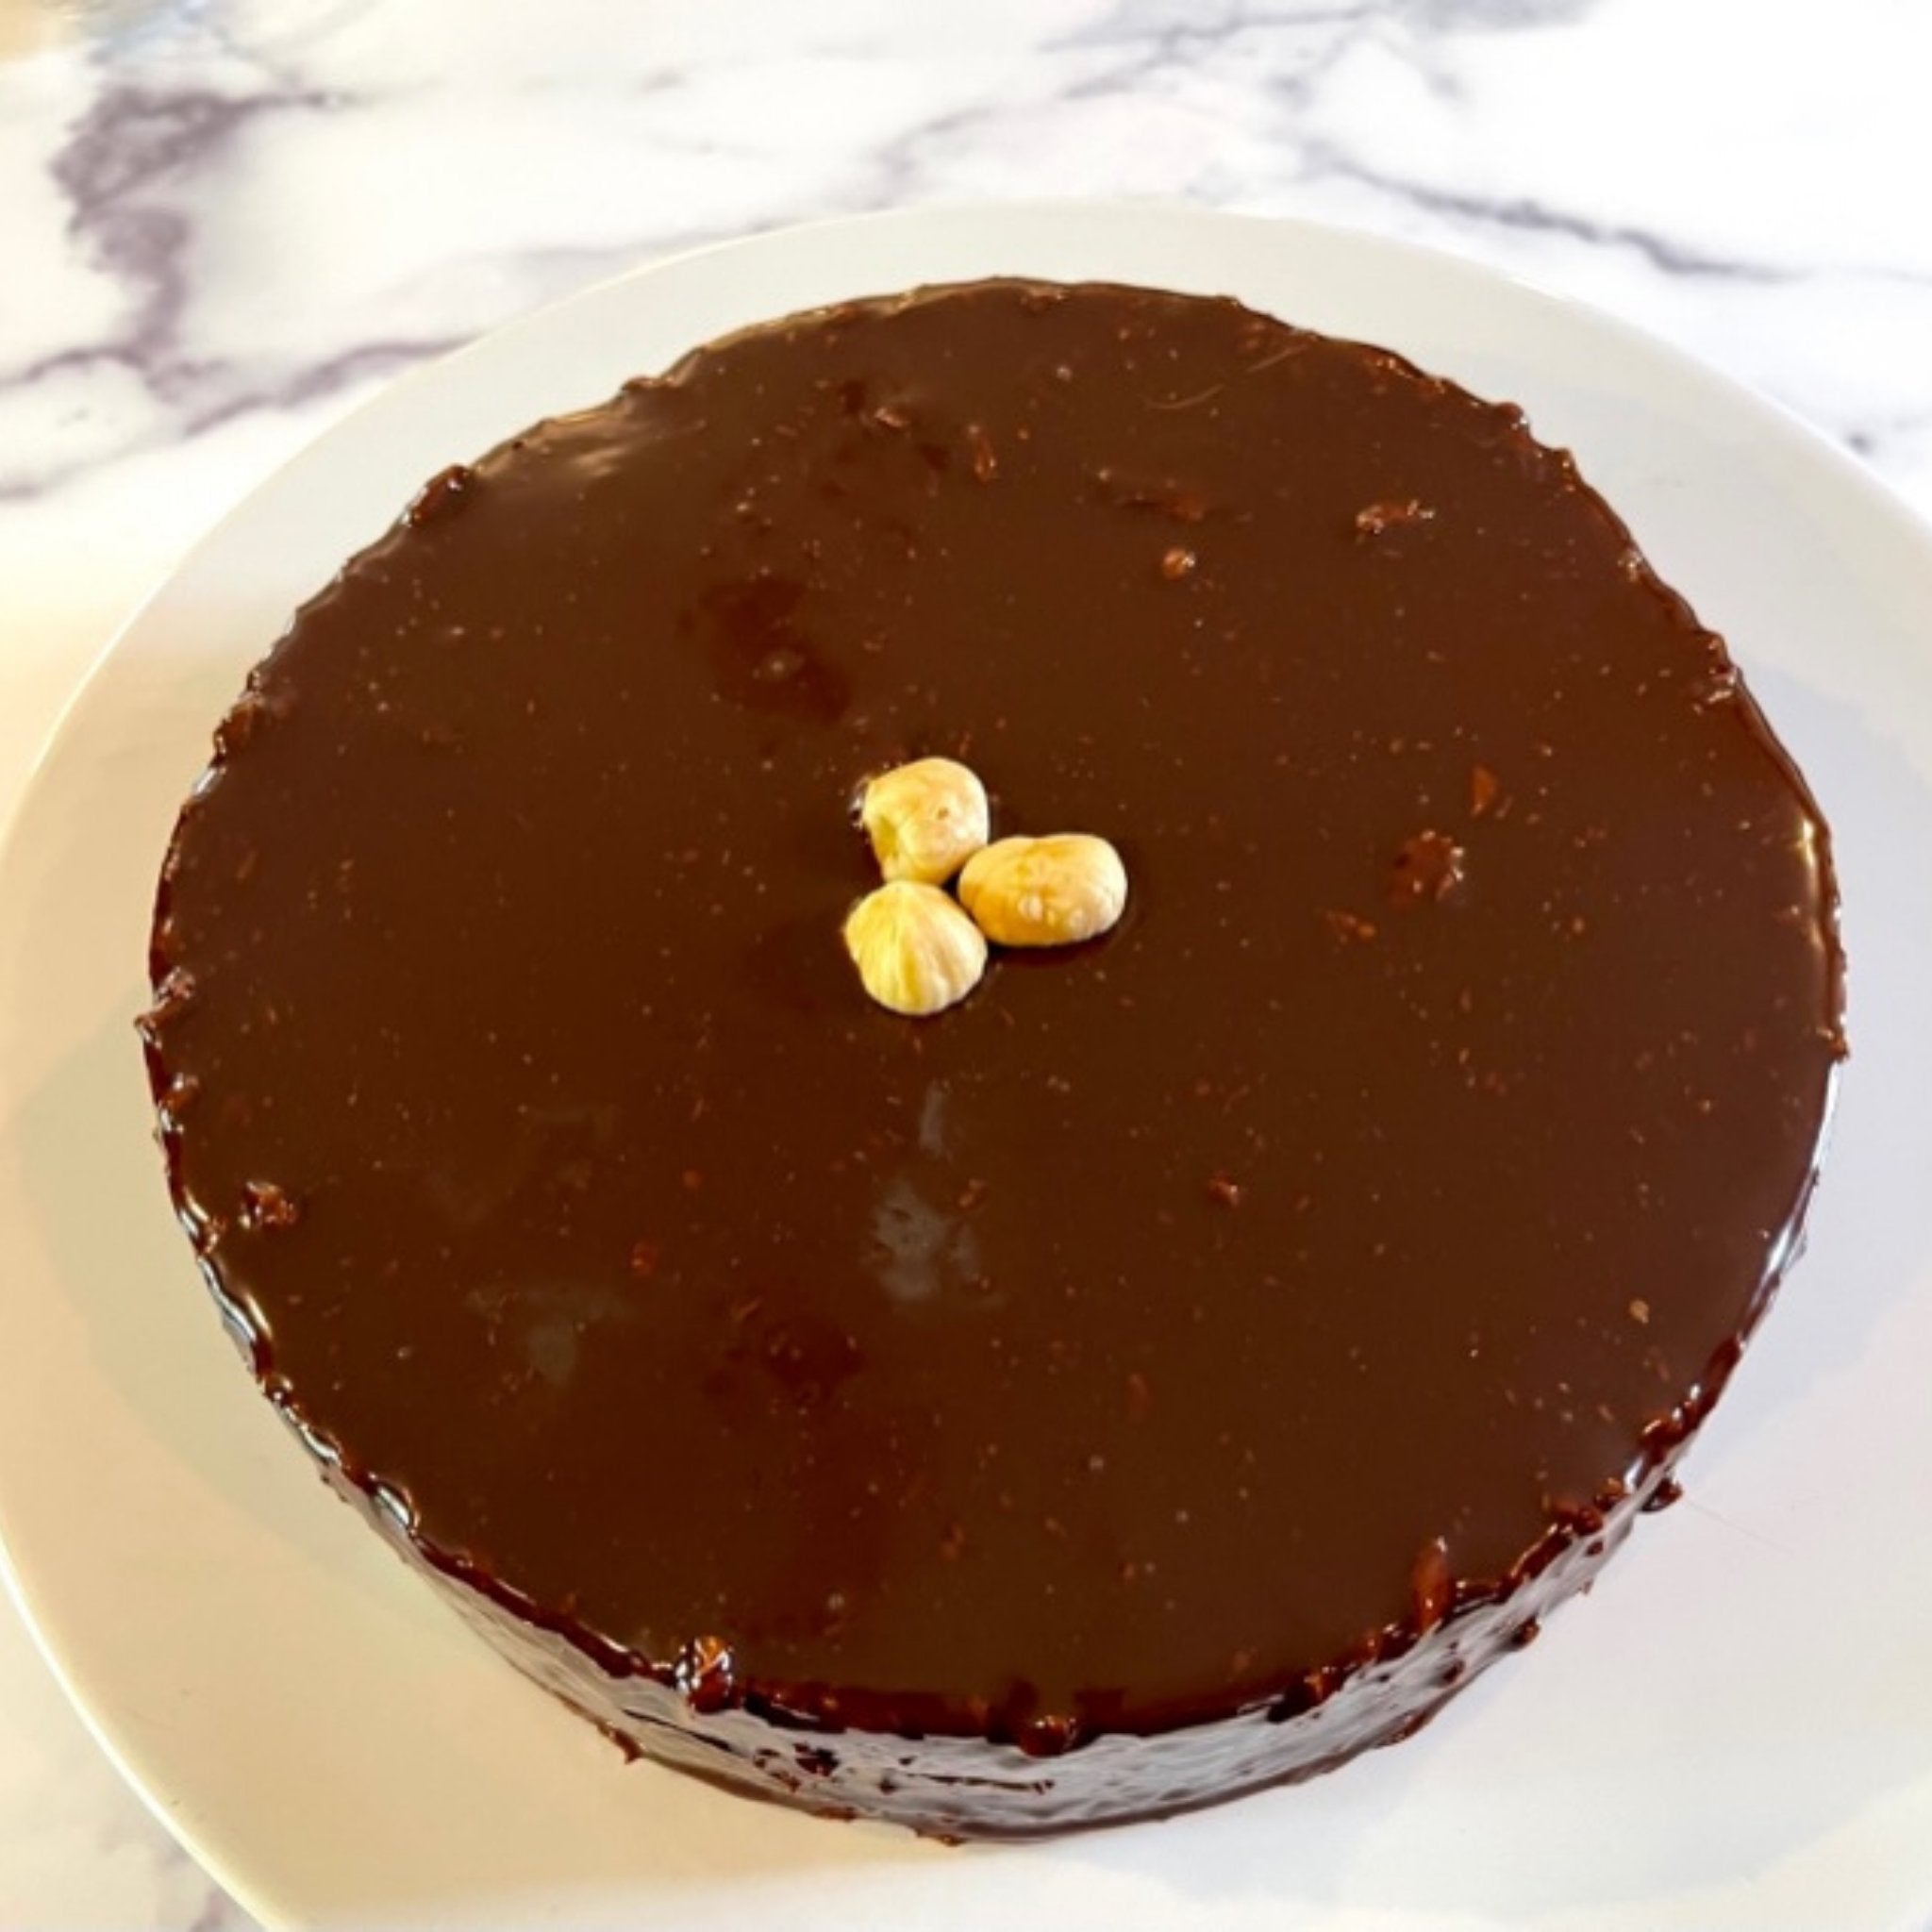 Chocolate-Hazelnut Cake with a Nutella Glaze